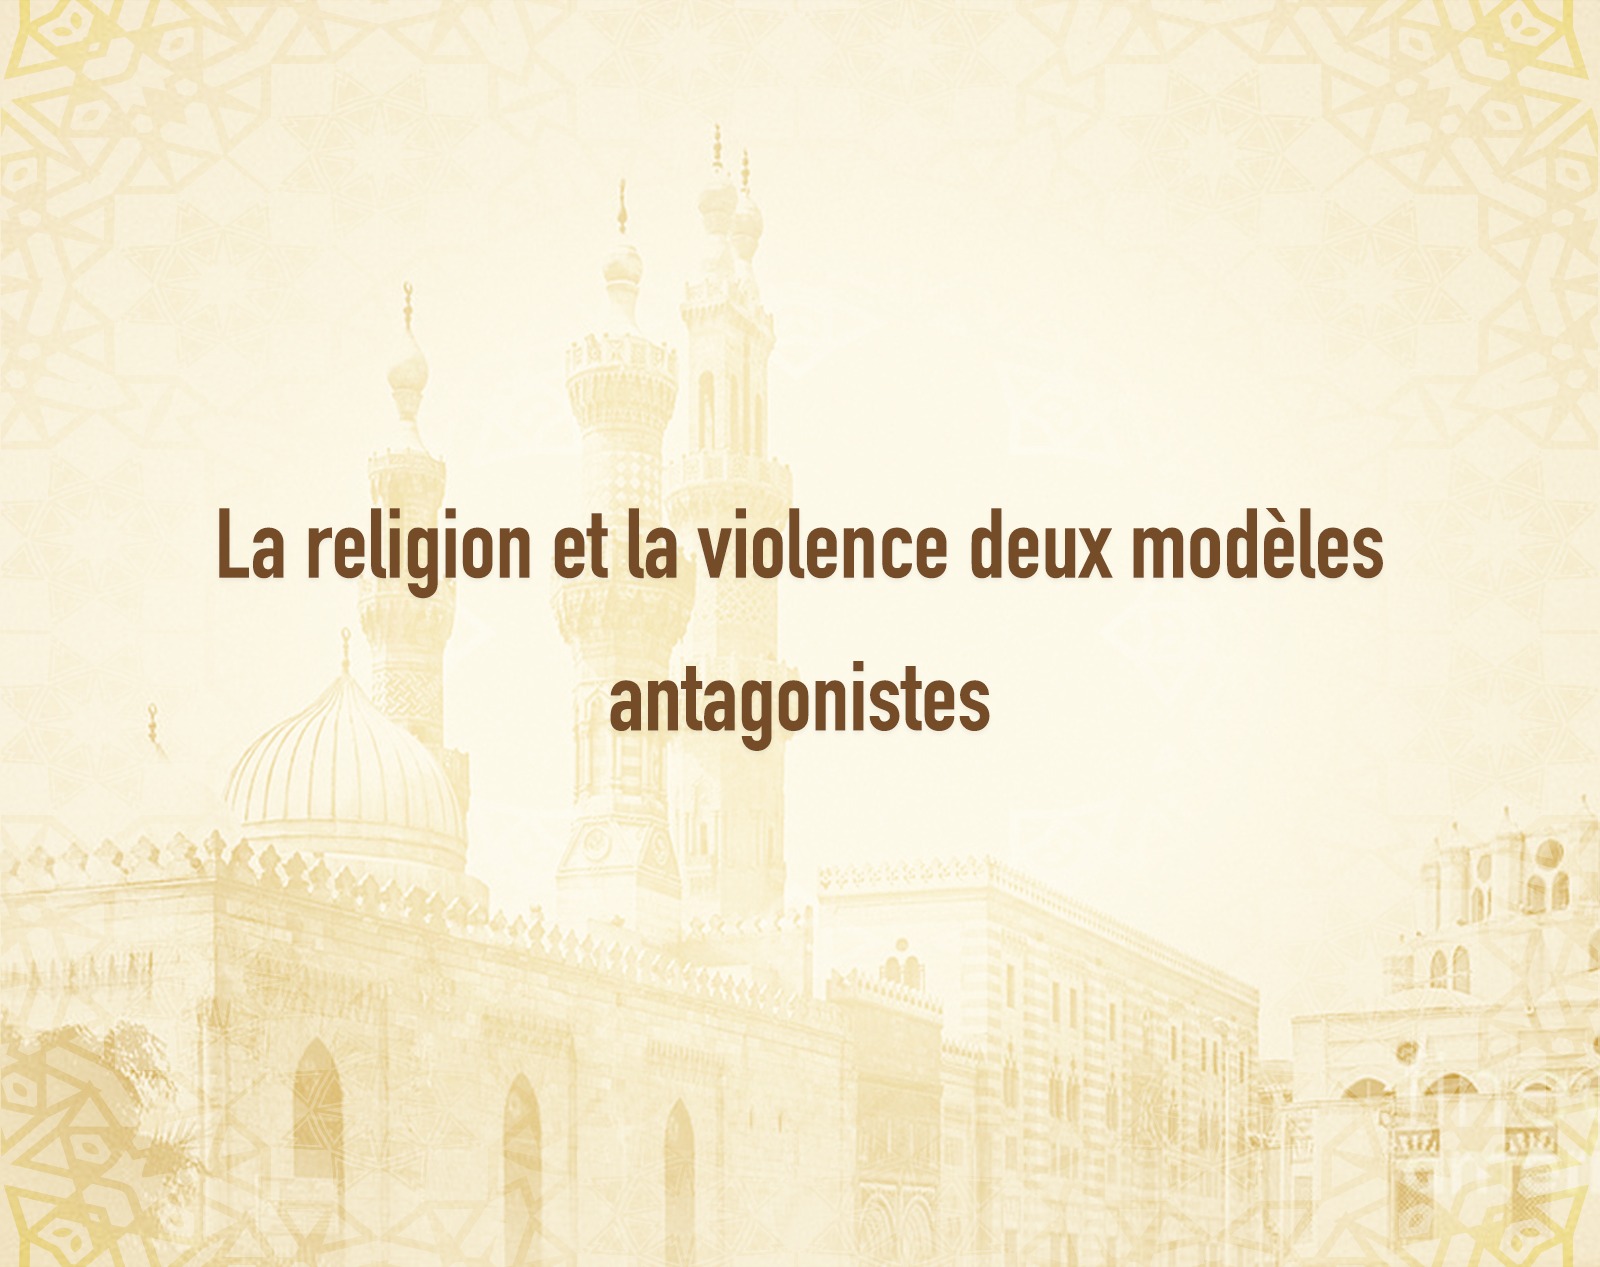 La religion et la violence deux modèles antagonistes.jpeg